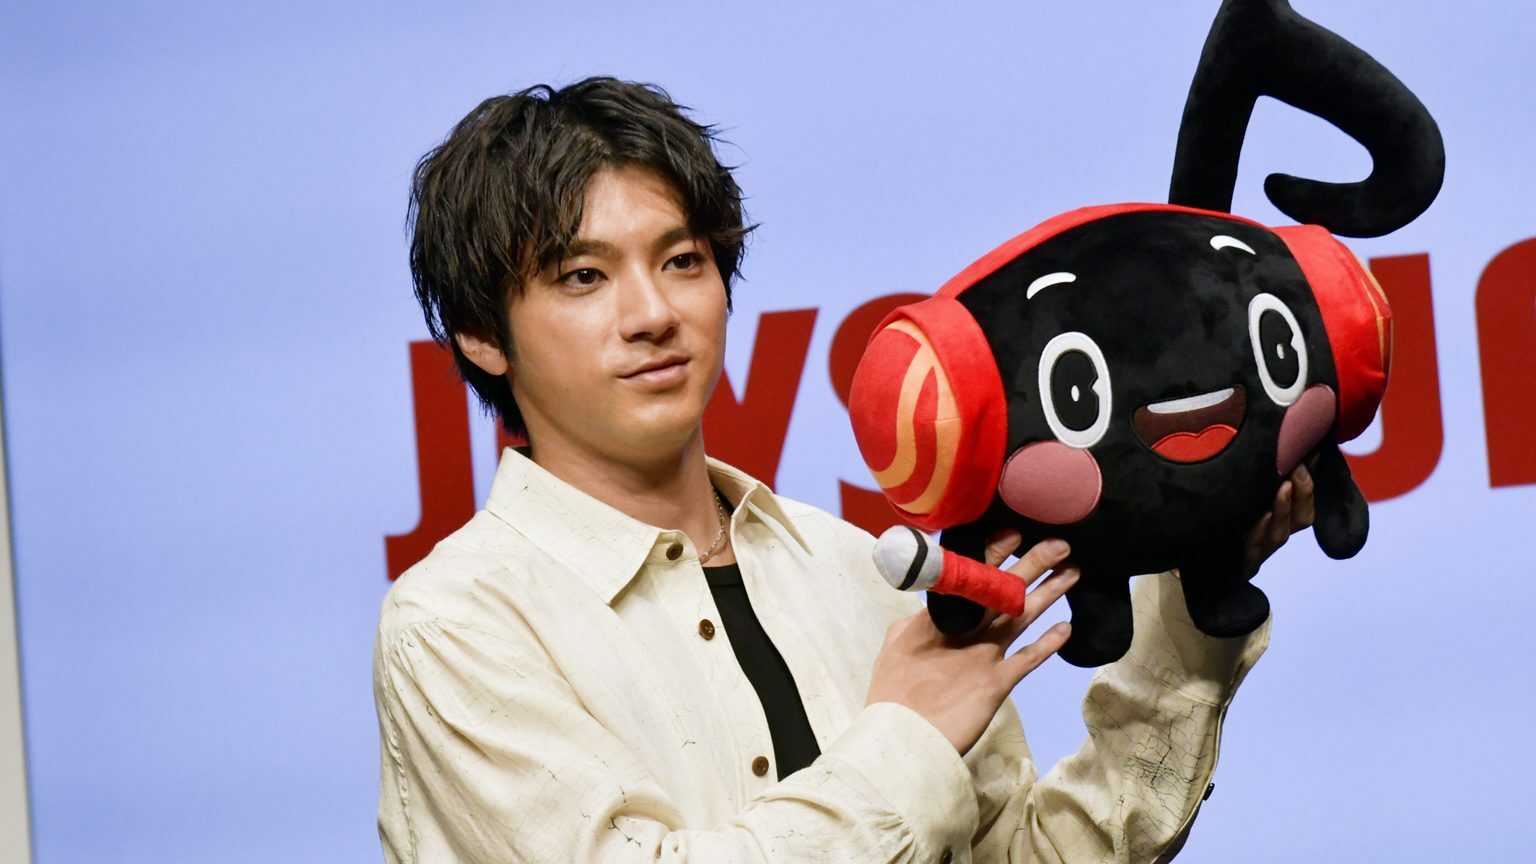 山田裕貴 もしも歌手デビューするなら“バラード”を歌いたい - Yahoo! JAPAN